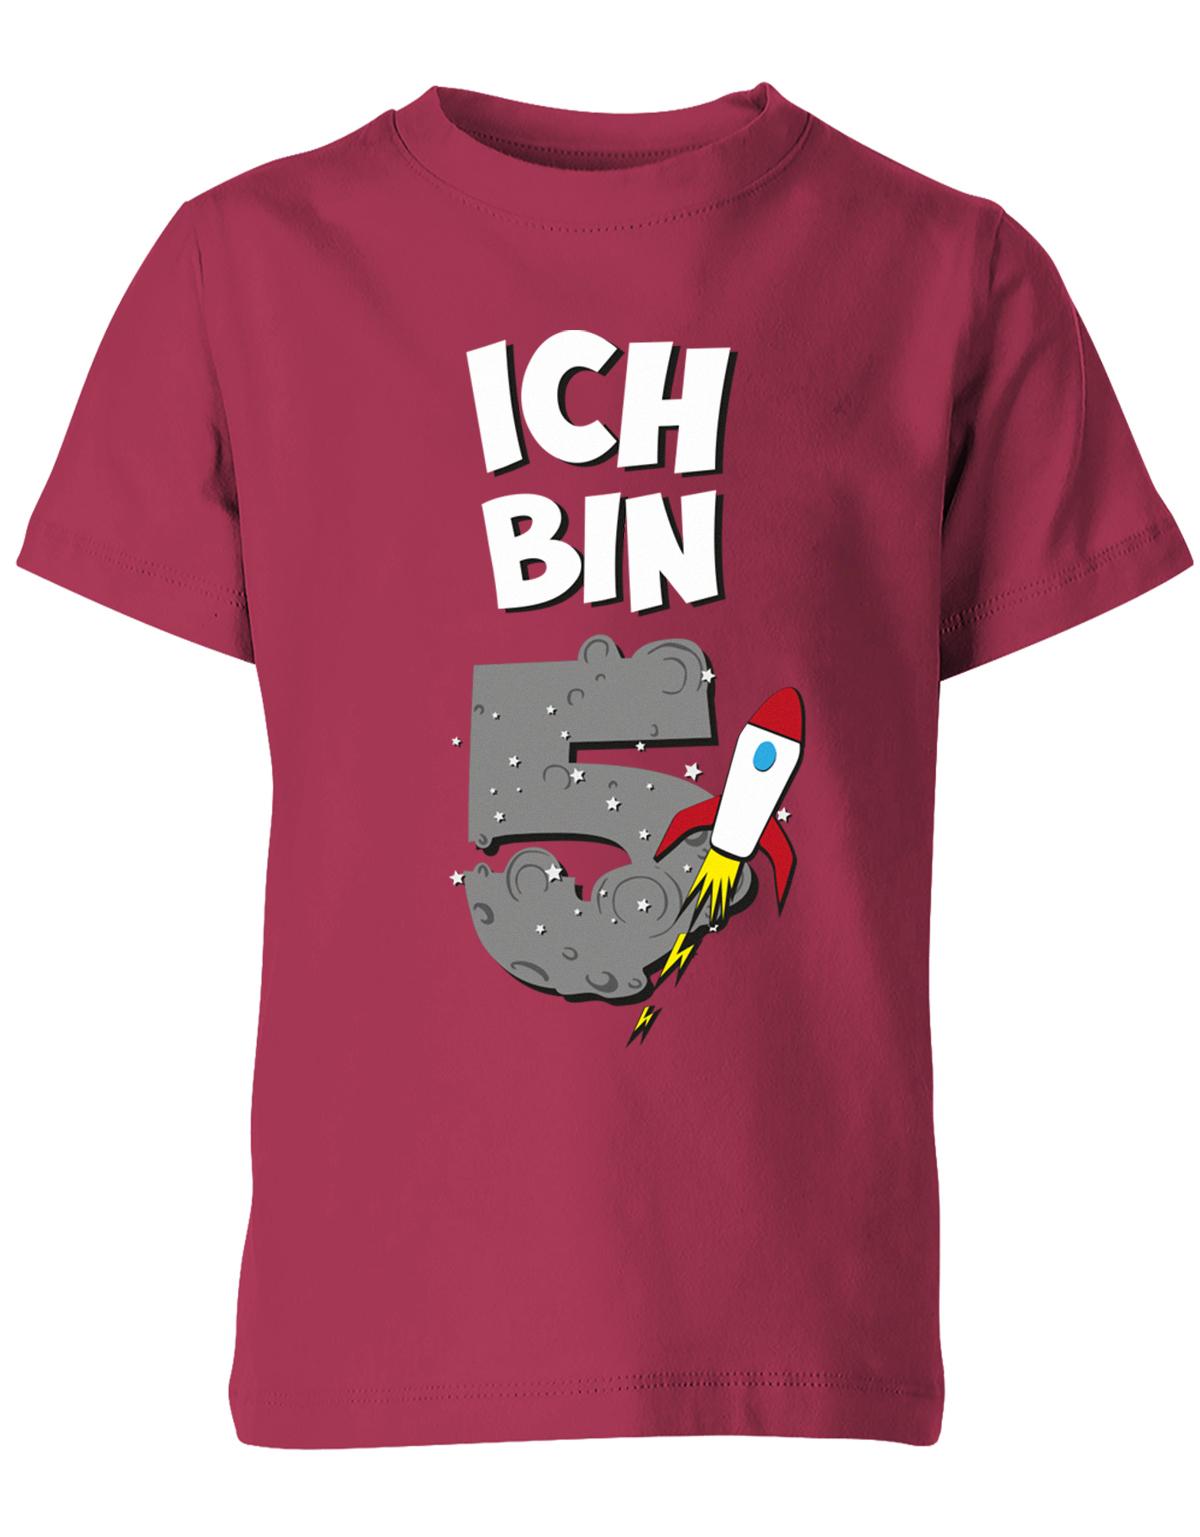 ich-bin-5-weltraum-rakete-planet-geburtstag-kinder-shirt-sorbet